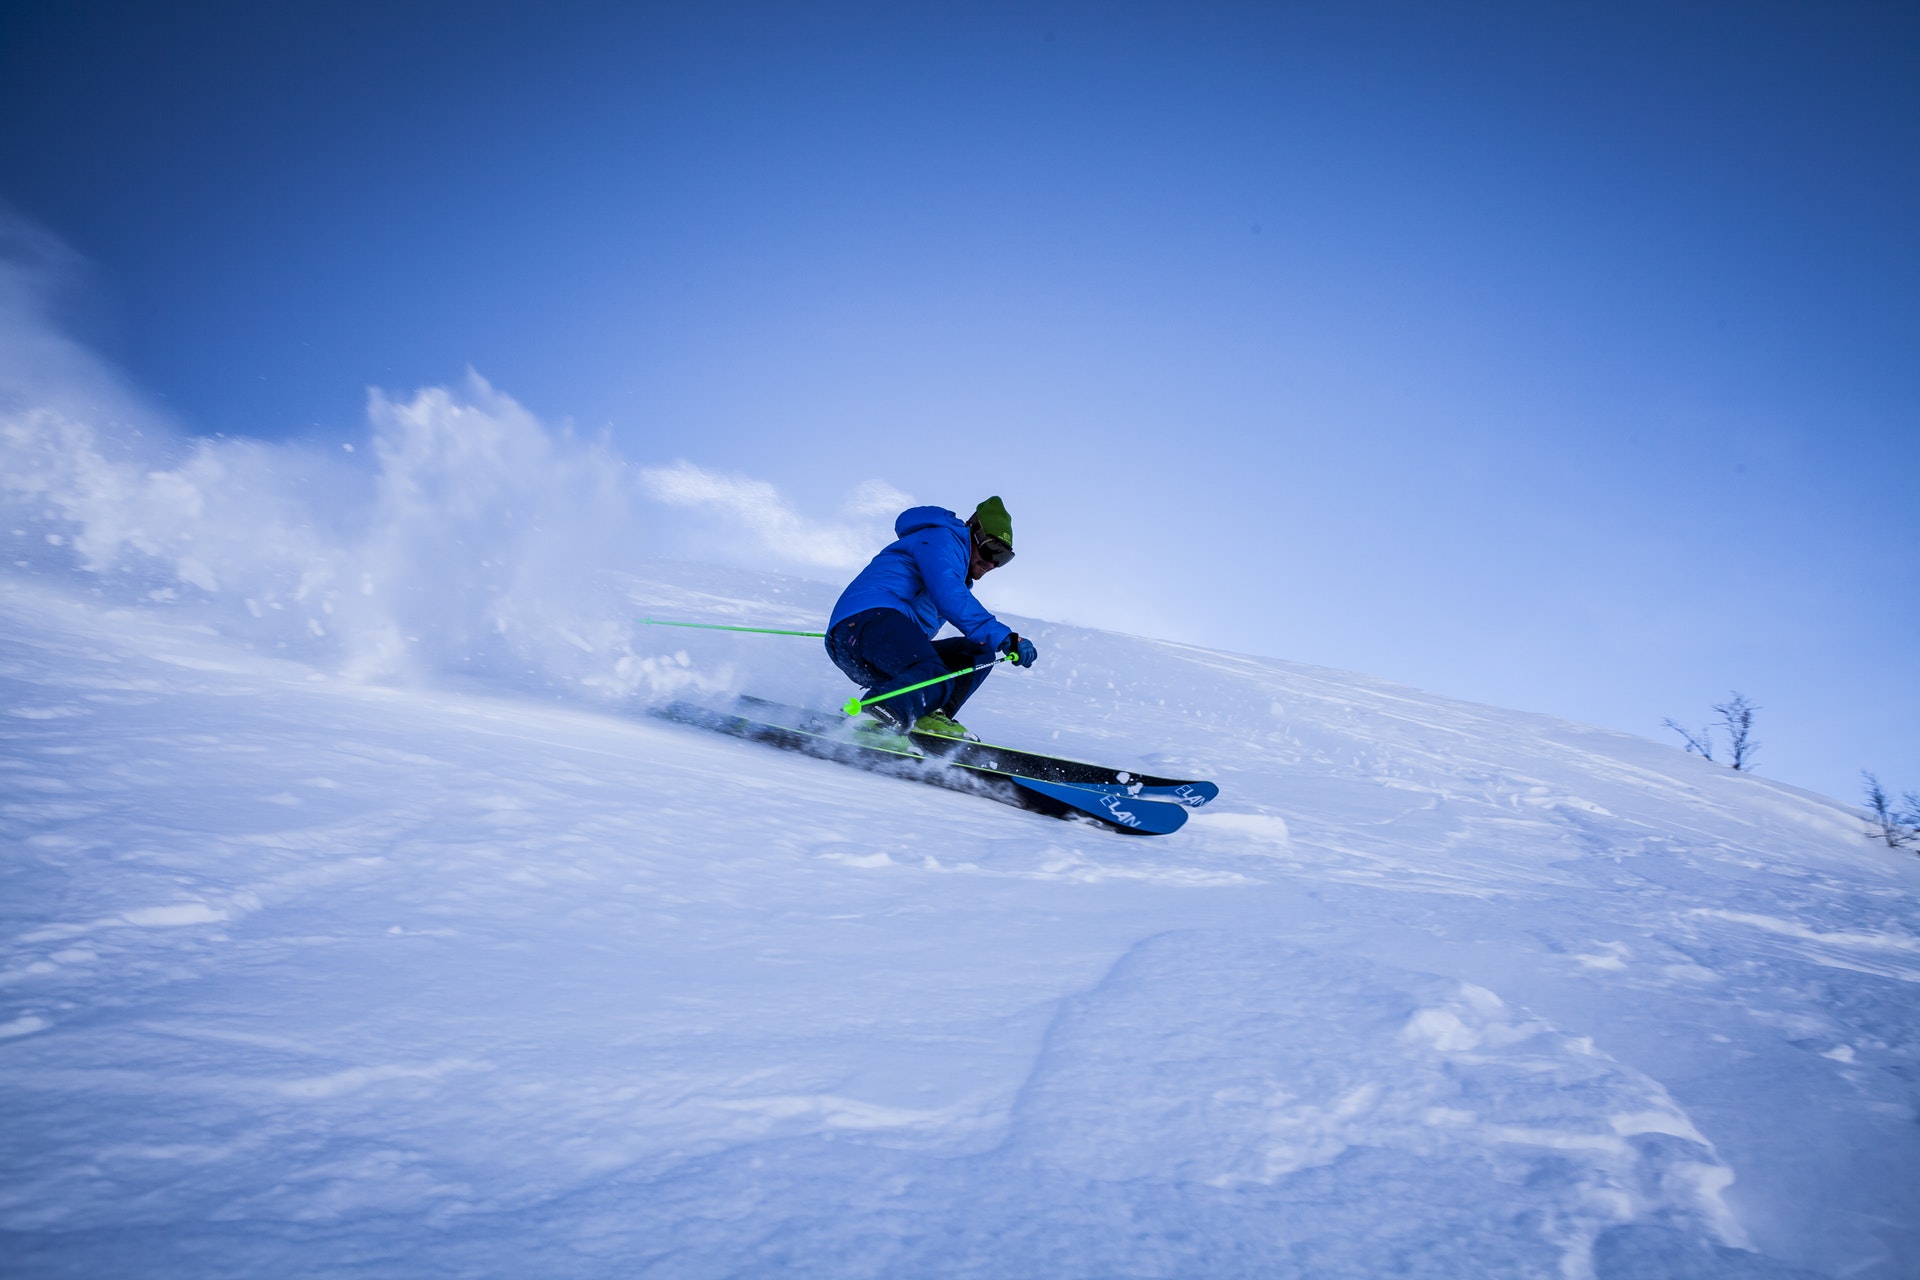 Le risque de blessure est très important au ski - @Terje Sollie - Pexels